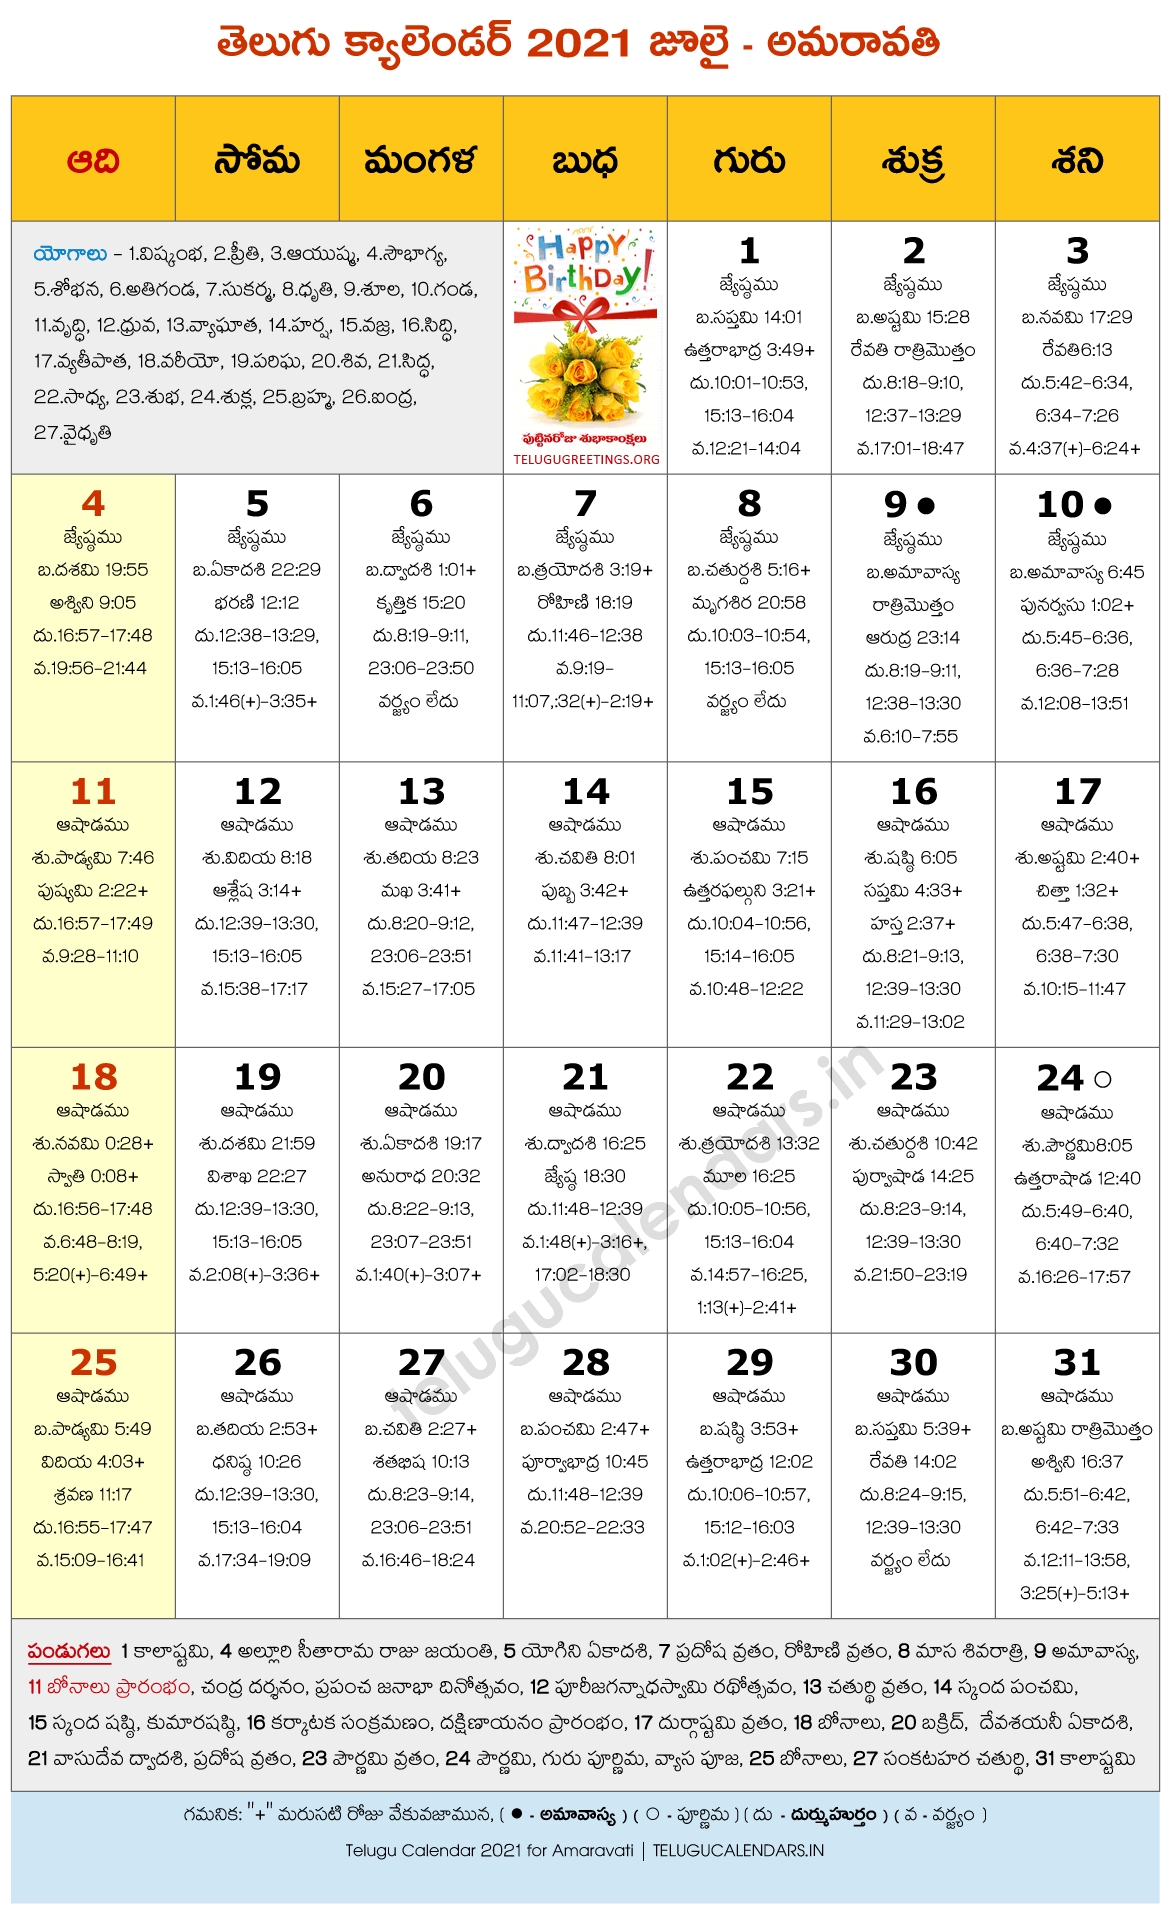 Amaravati 2021 July Telugu Calendar | Telugu Calendars June 2021 Calendar Hindi